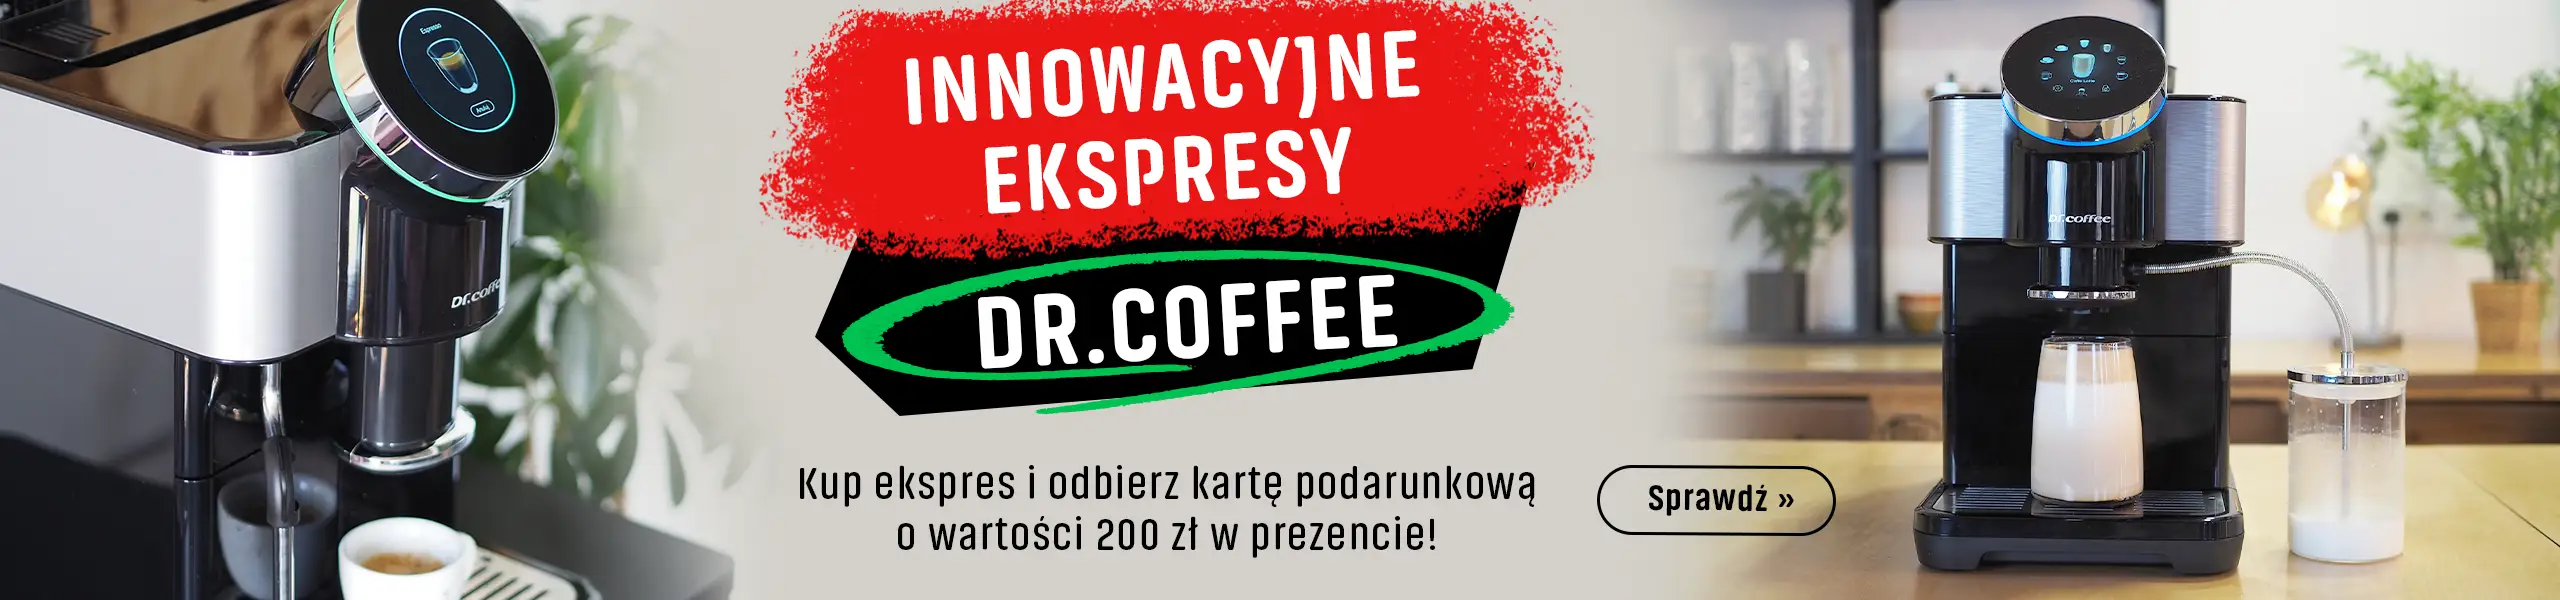 Innowacyjne ekspresy DR.COFFEE